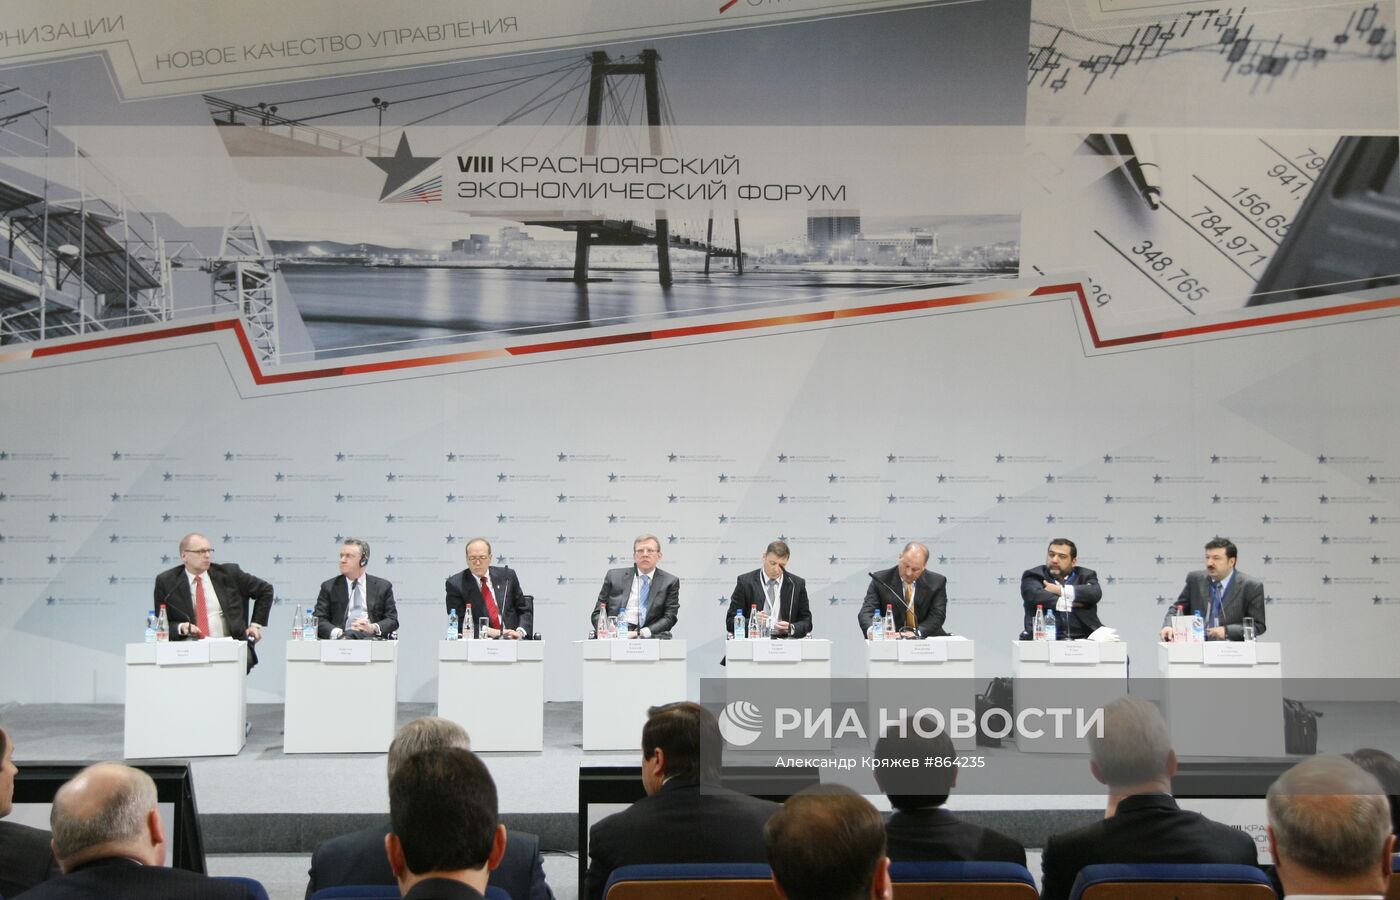 VIII Красноярский экономический форум